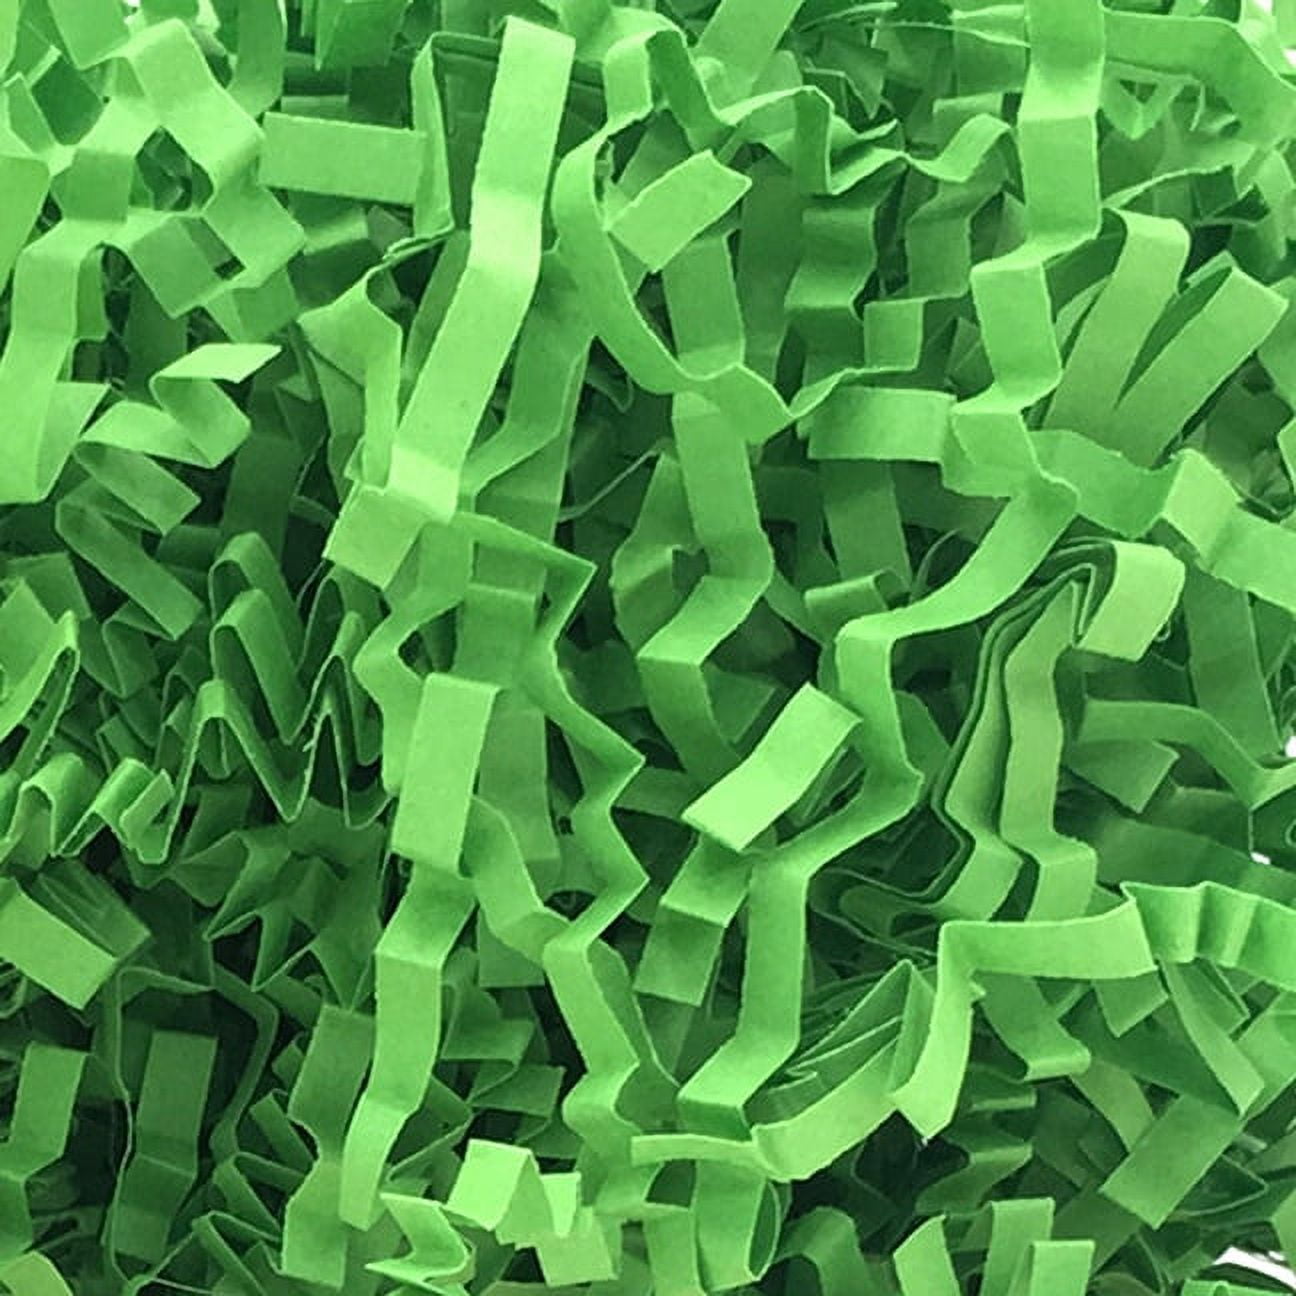 Feildoo 100 Grams Basket Filler Paper Shred, Sparkly Shredded Grass Stuffer  Crinkle Confetti Raffia Paper Gift Box Filler for DIY Gift Wrapping &  Basket Filling, F#Colorful White, PR0281 